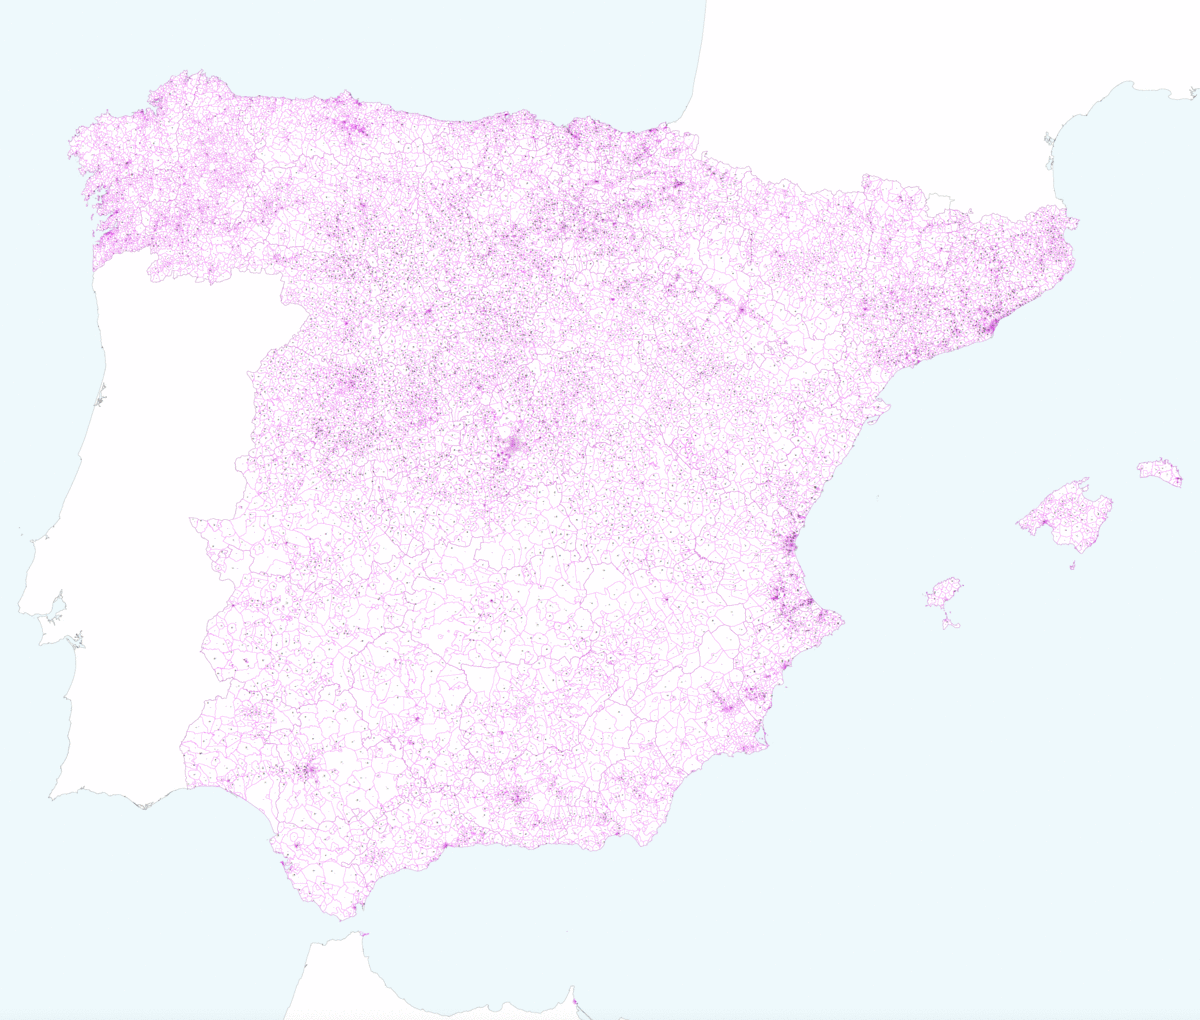   Mapa de España con códigos postales de 5 cifras